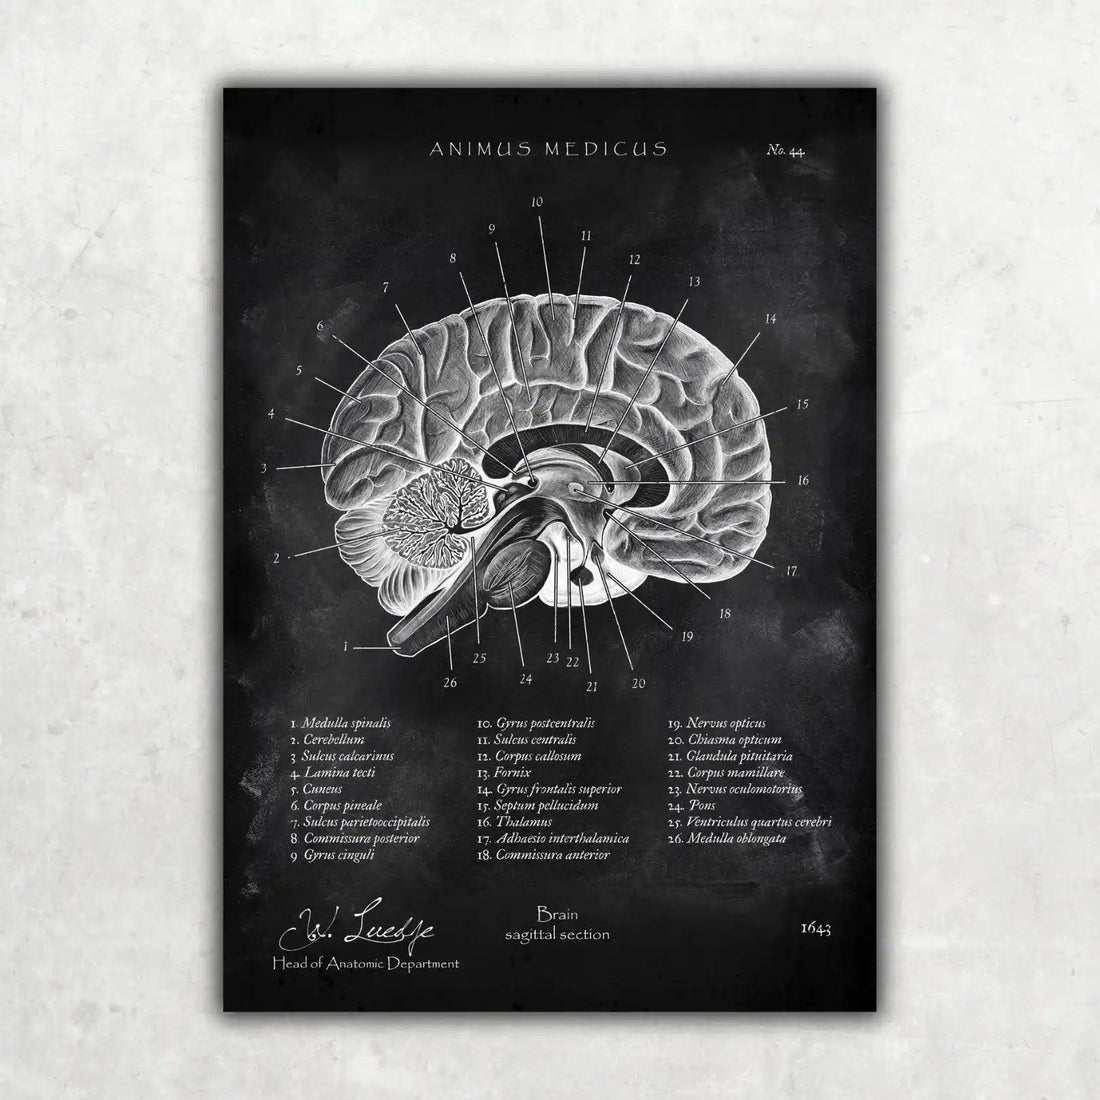 Gehirn im Sagittalschnitt - Chalkboard - Animus Medicus GmbH